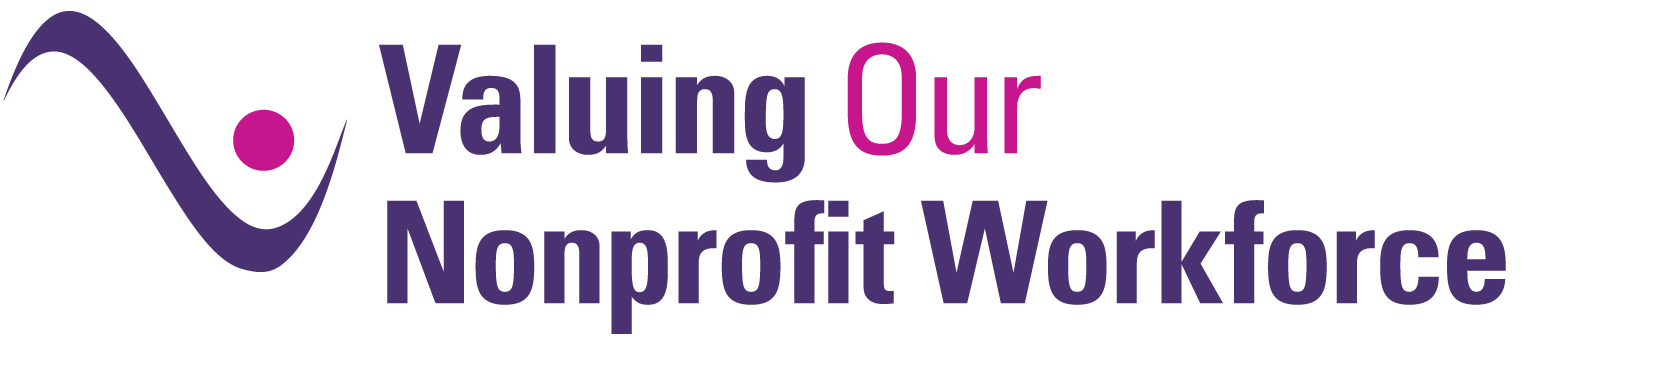 Valuing Our Nonprofit Workforce: A Compensation Survey Report